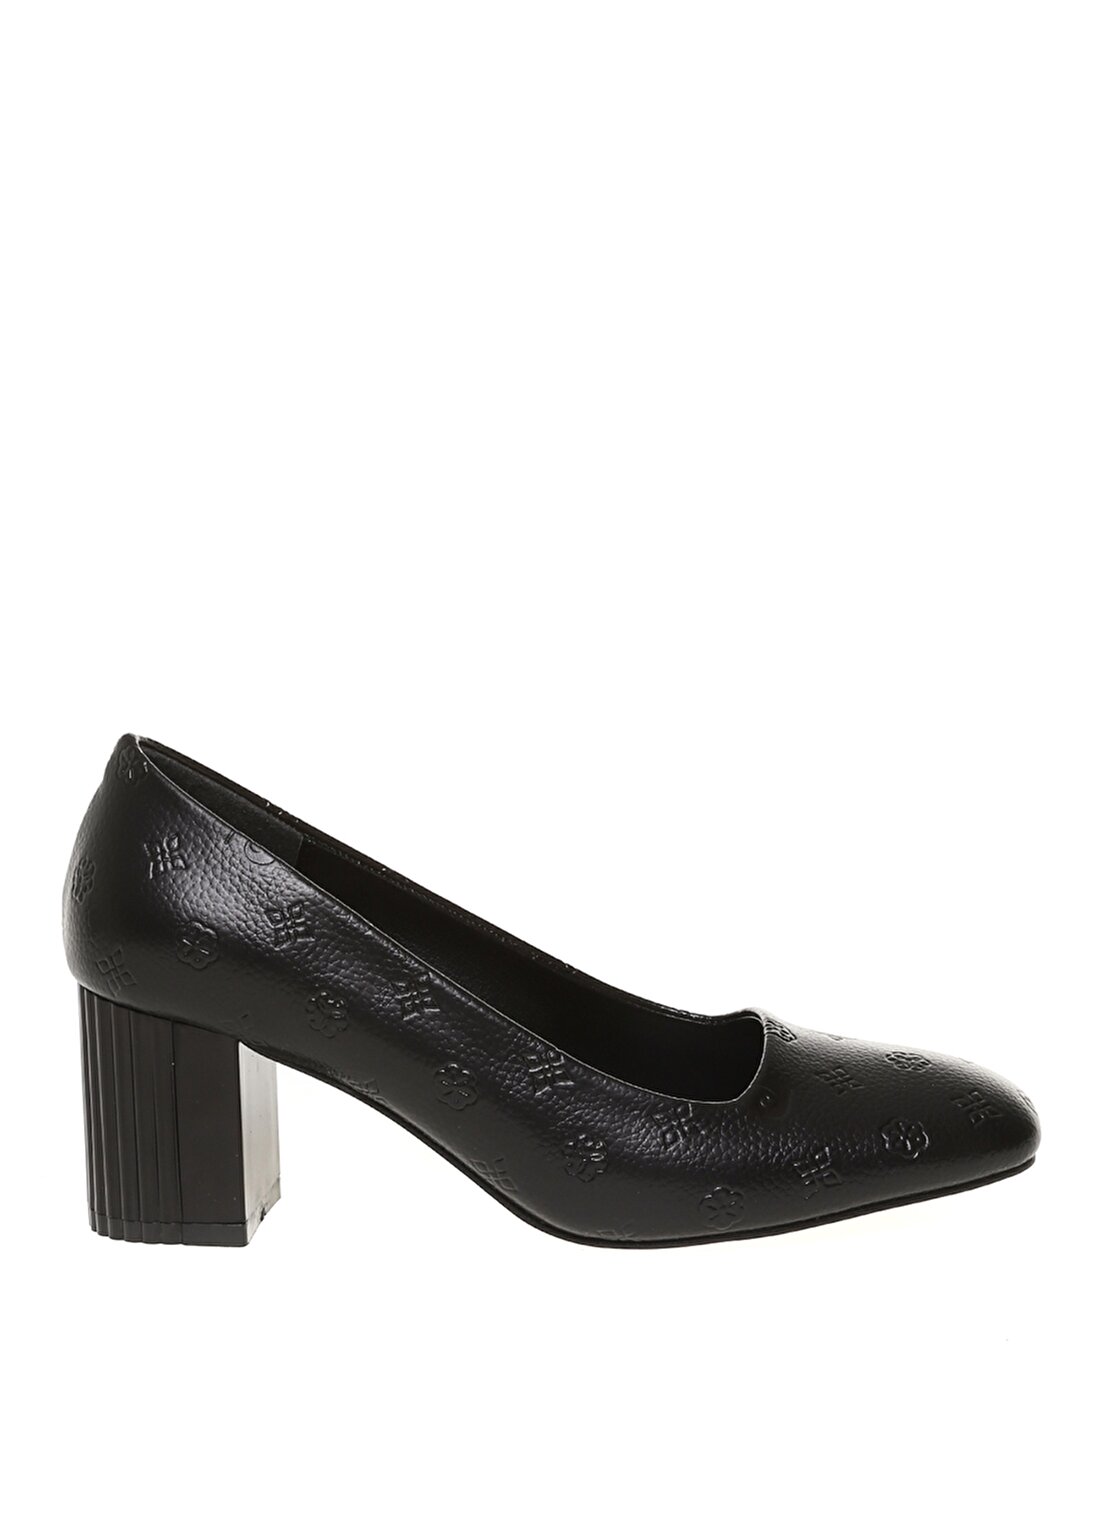 Pierre Cardin Kadın Siyah Topuklu Ayakkabı PC-51664